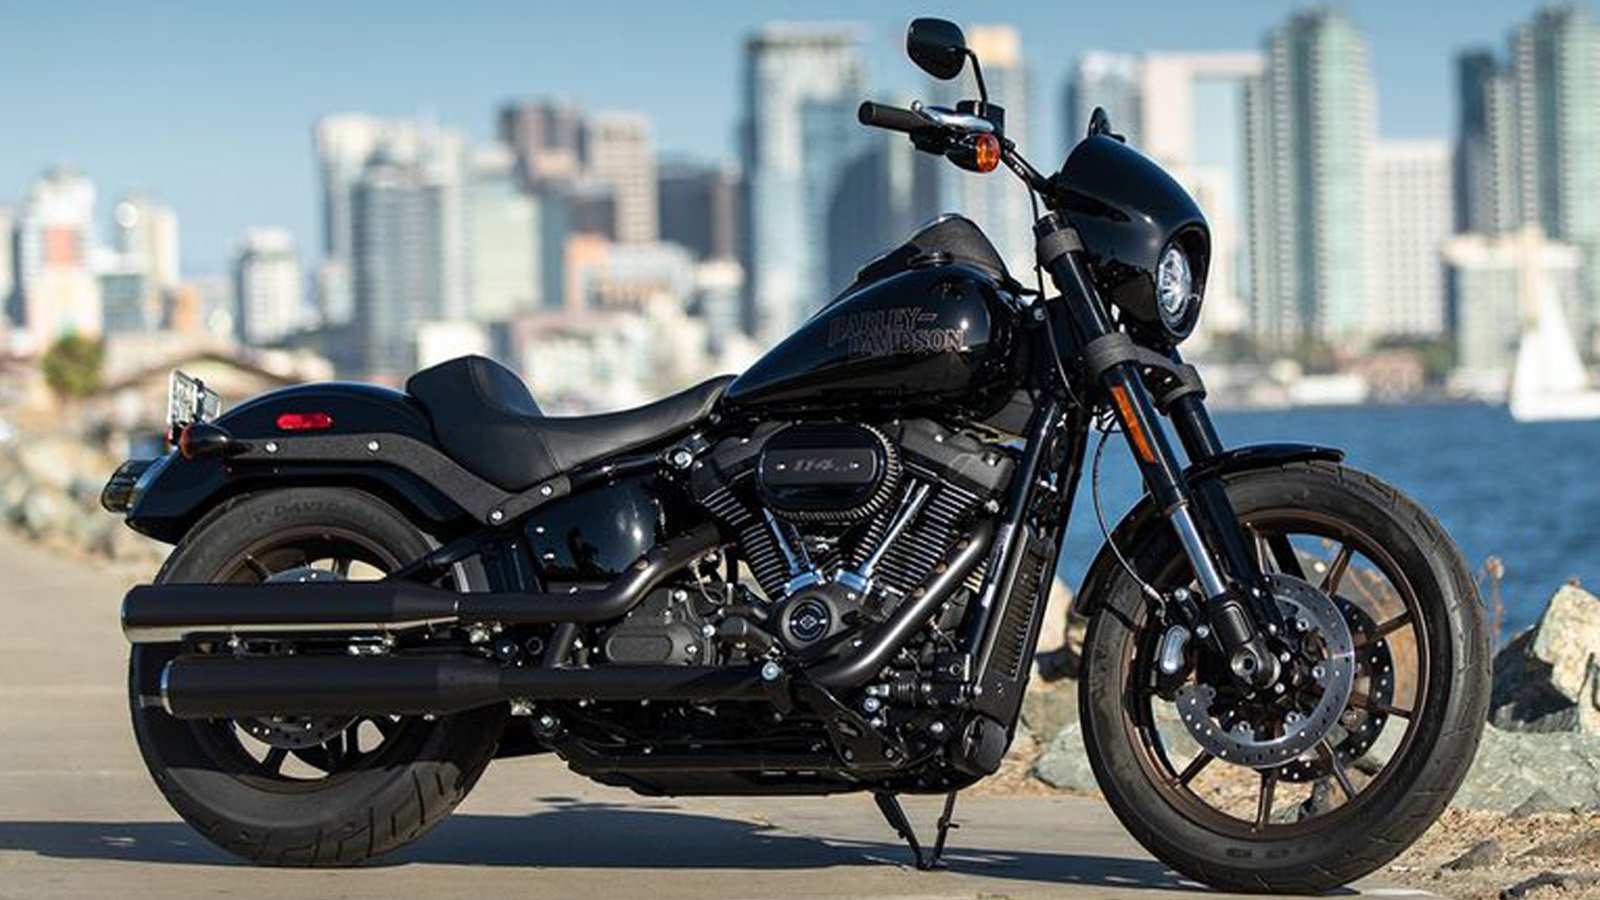 Harley Davidson Low Rider S Makes A 2020 Return Harley Davidson Forums